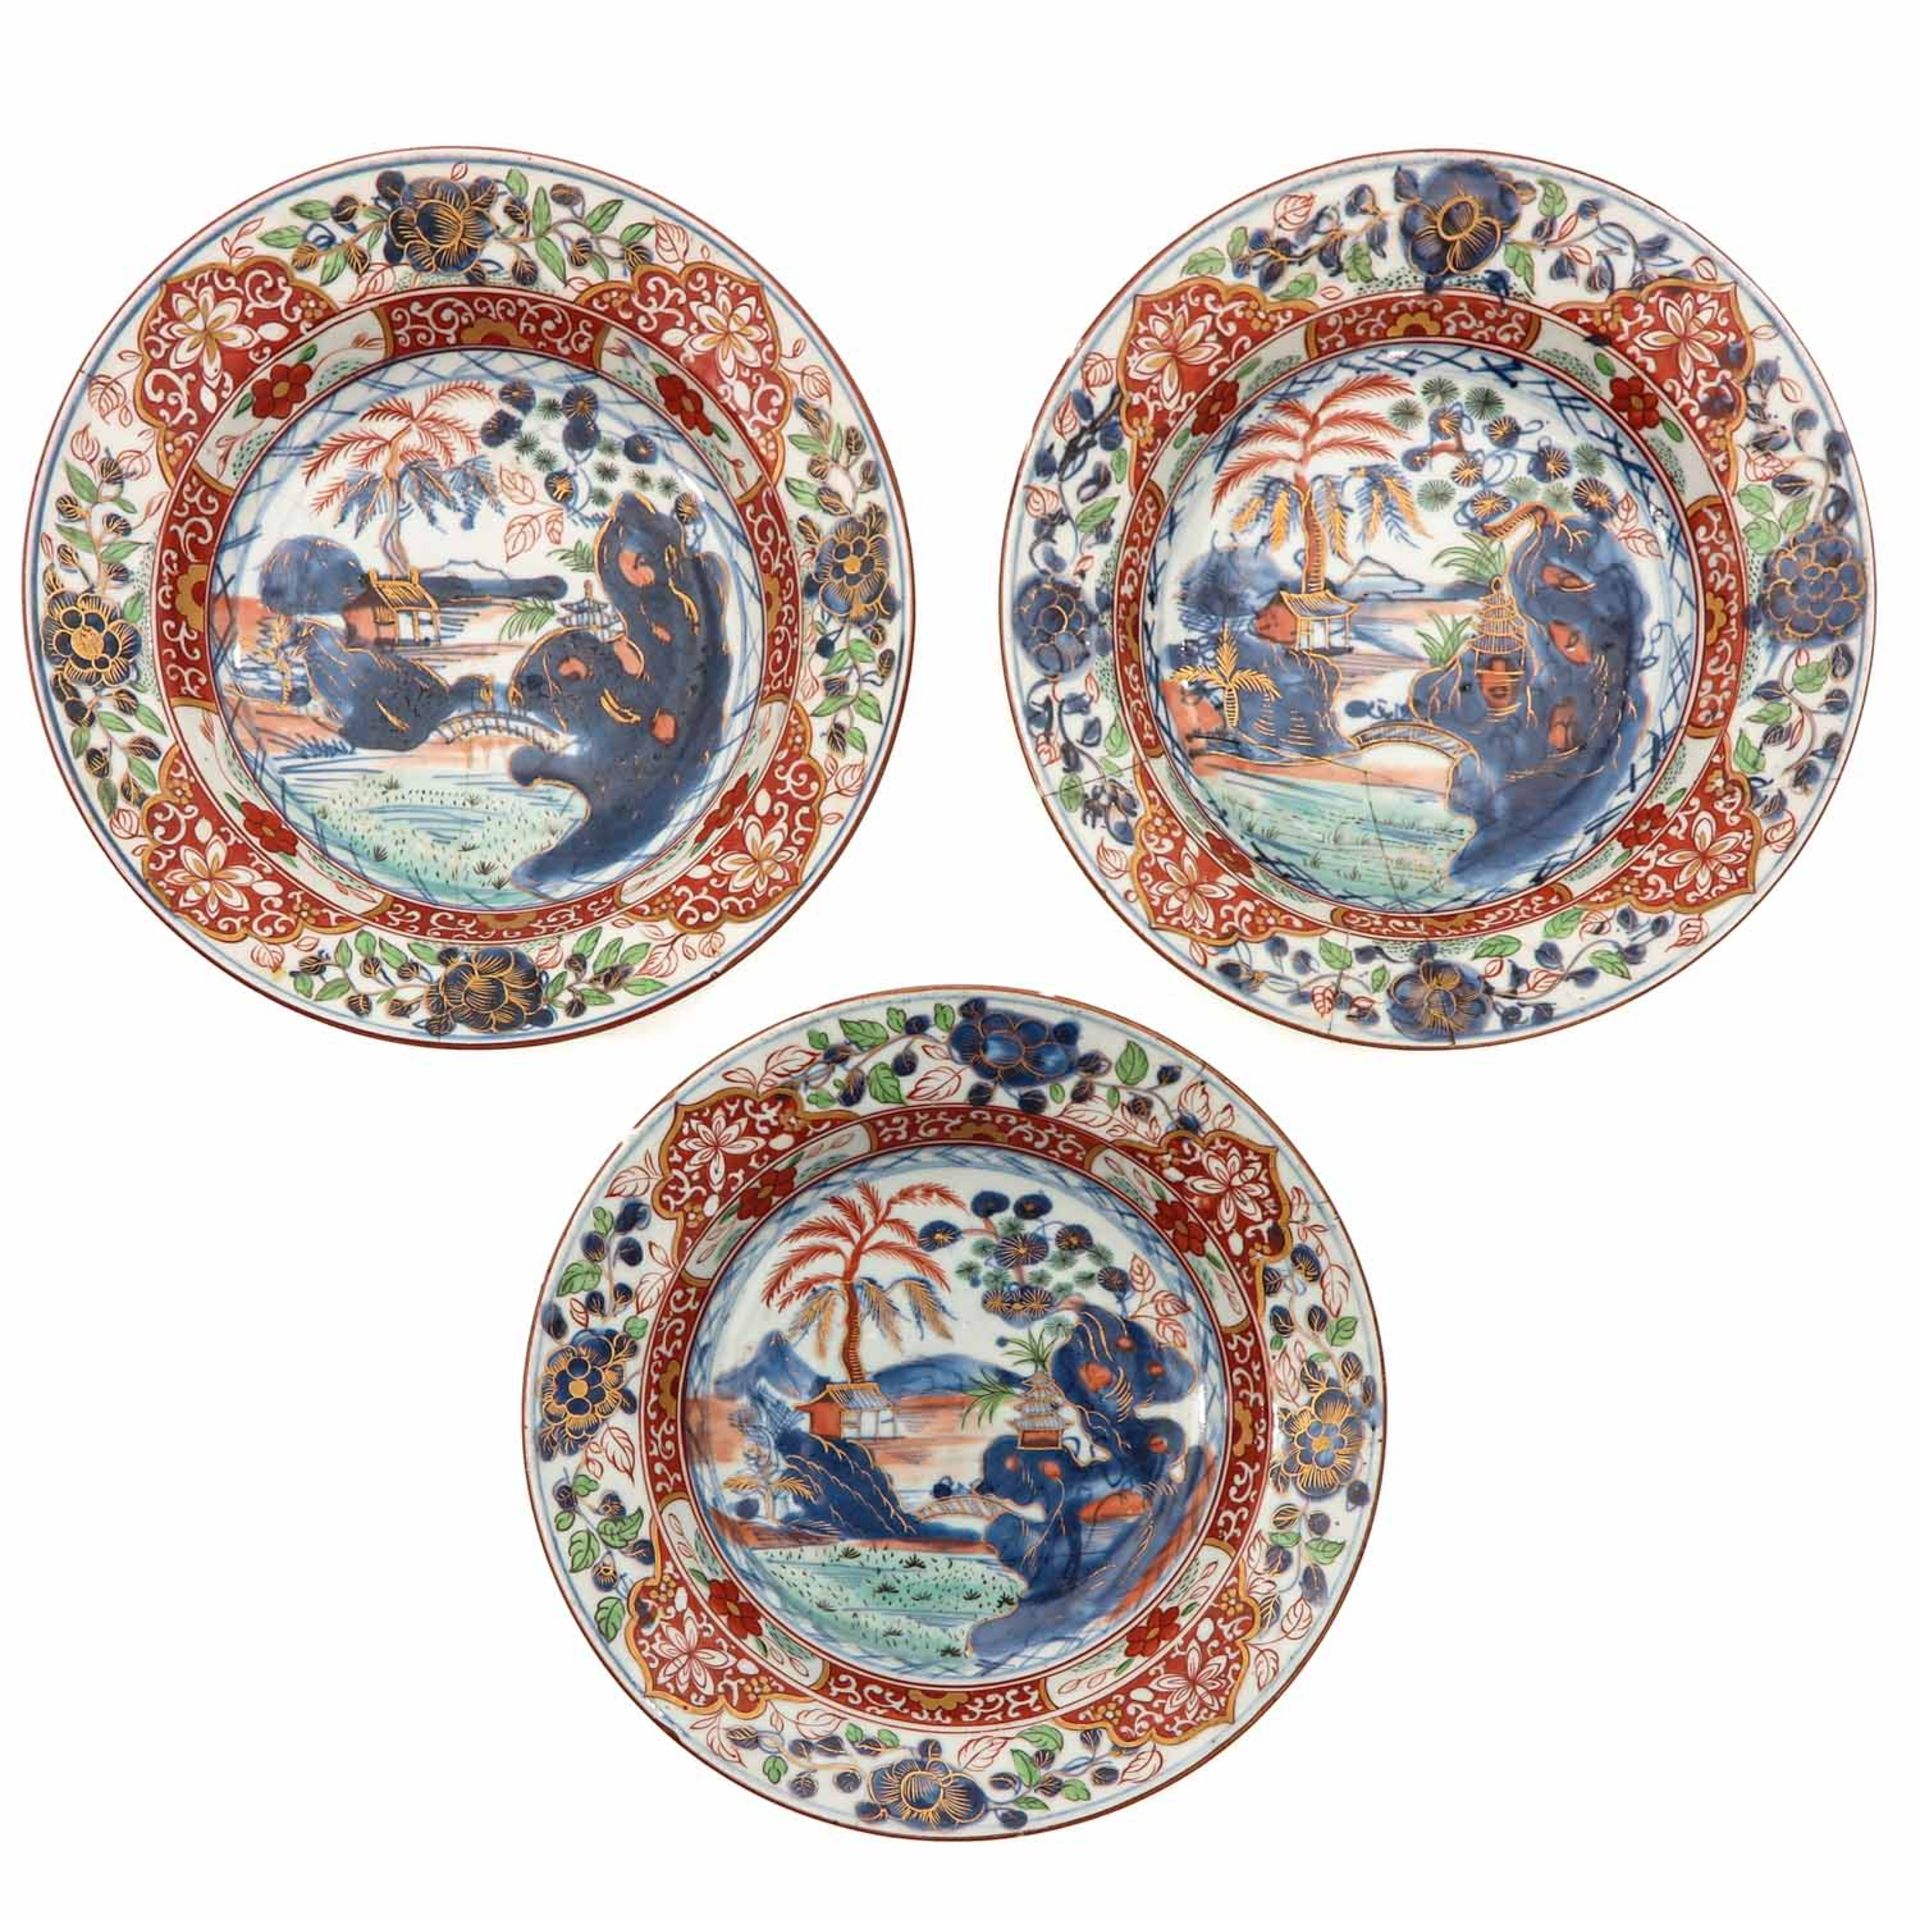 A Series of 3 Polychrome Decor Plates